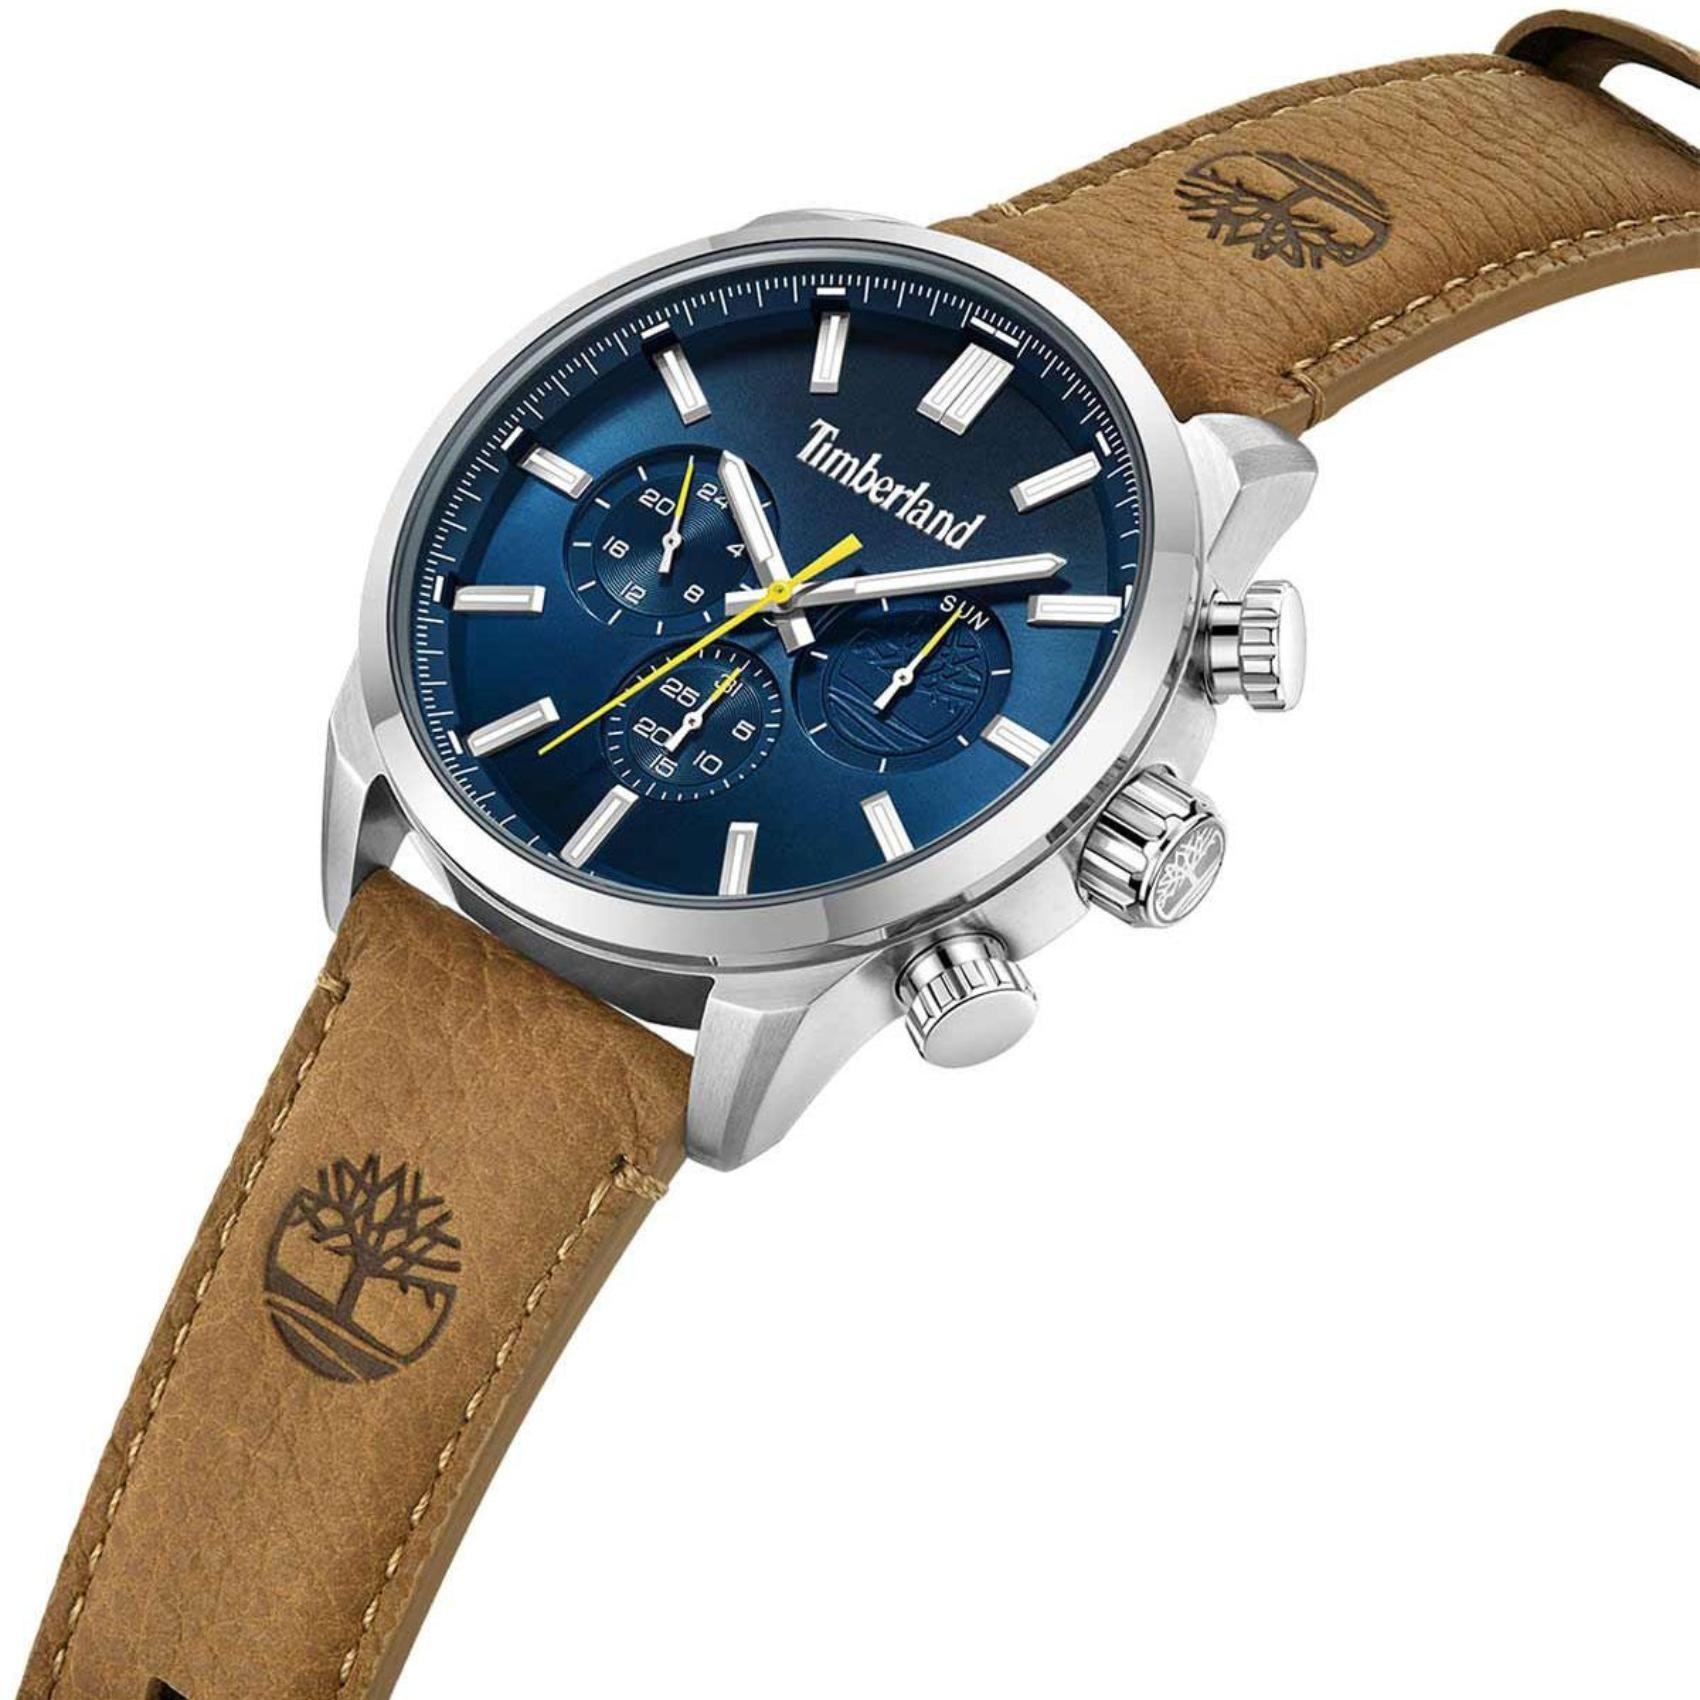 Αντρικό ρολόι Timberland Henniker II TDWGF0028702 με καφέ δερμάτινο λουράκι και μπλε καντράν διαμέτρου 46mm και ημέρα-ημερομηνία.